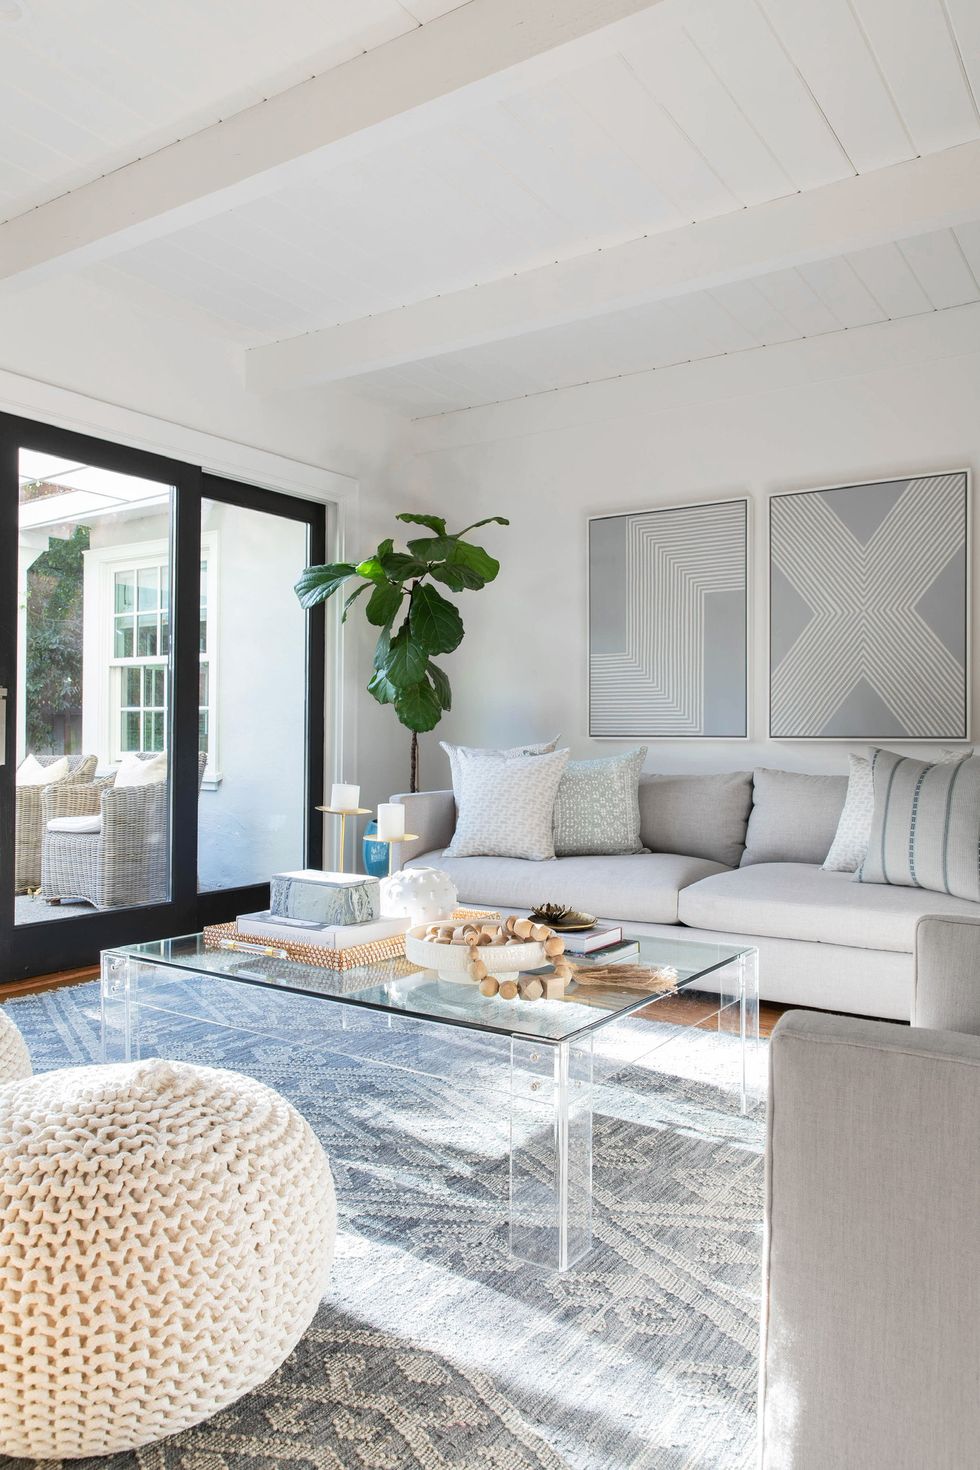 34 Effortless Ways to Decorate Around a Beige Couch  Living room decor,  Living room designs, Living room inspiration